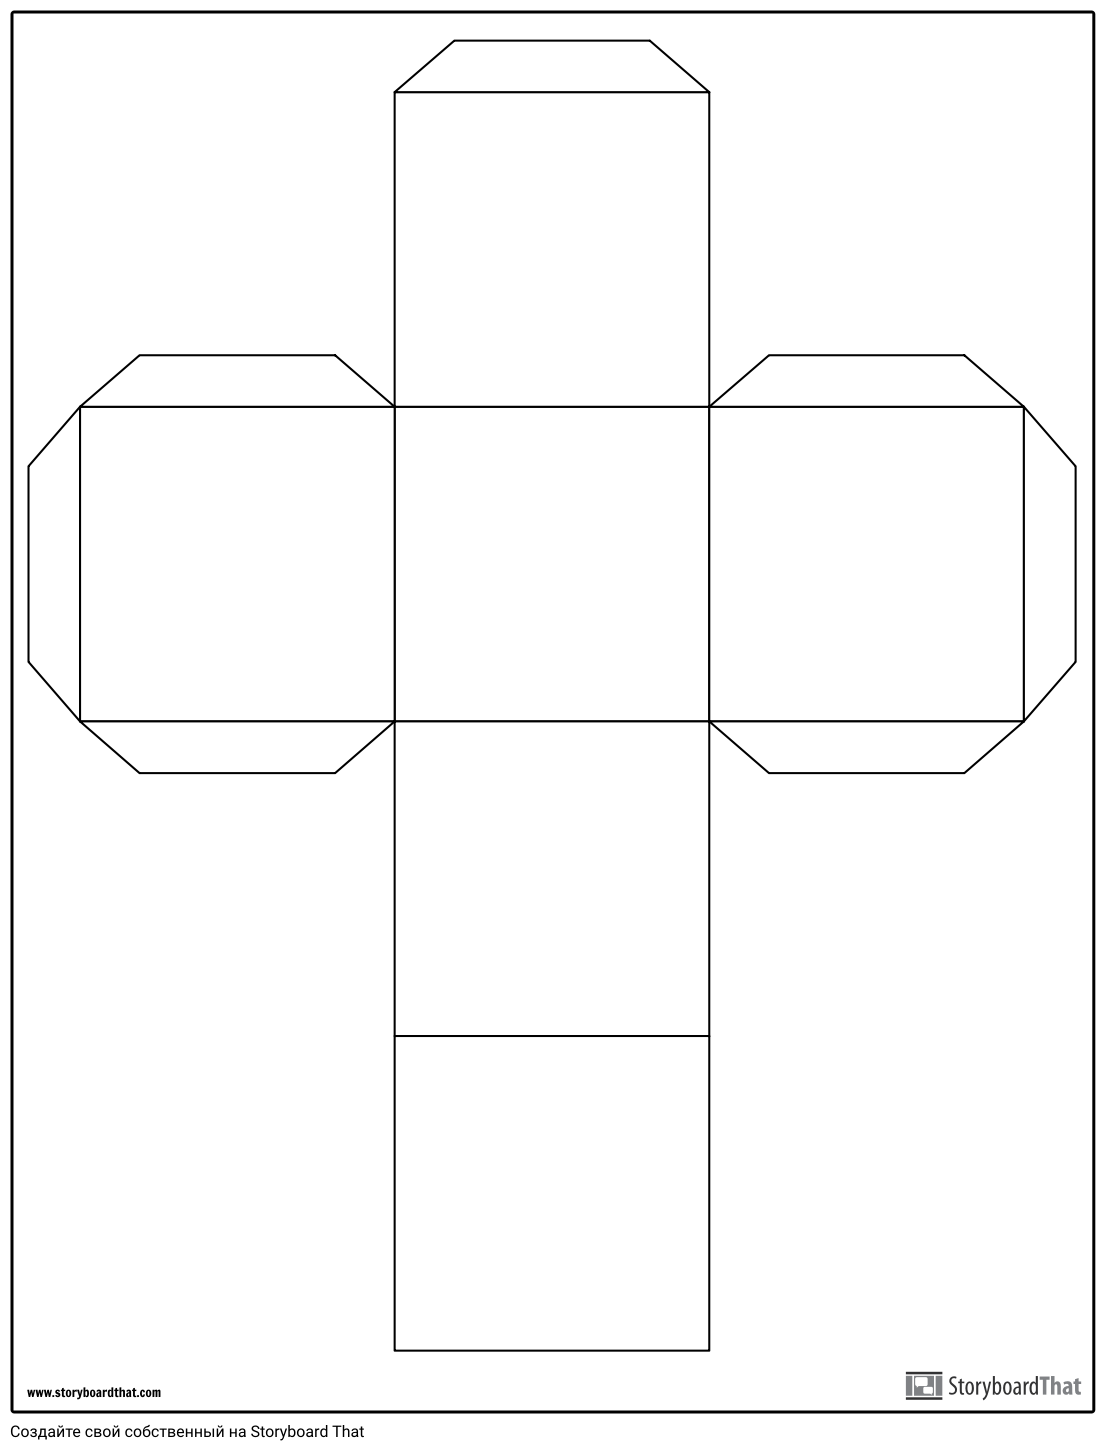 Шаблон Cube